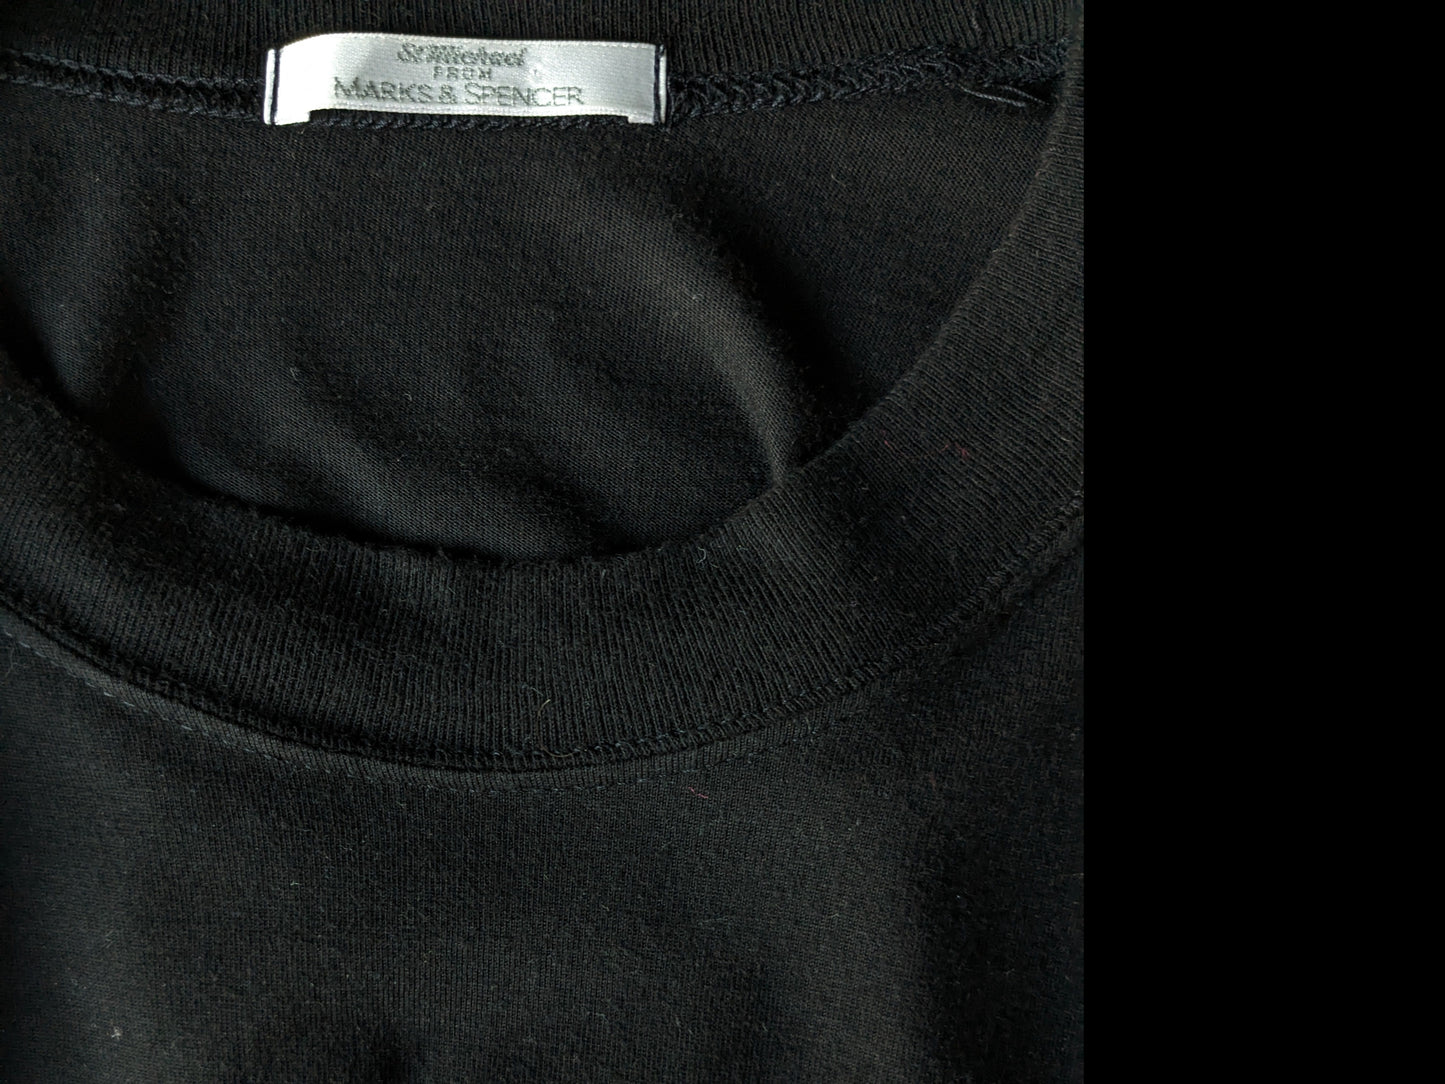 Marks & Spencer Shirt. Noir avec imprimé. Taille L.